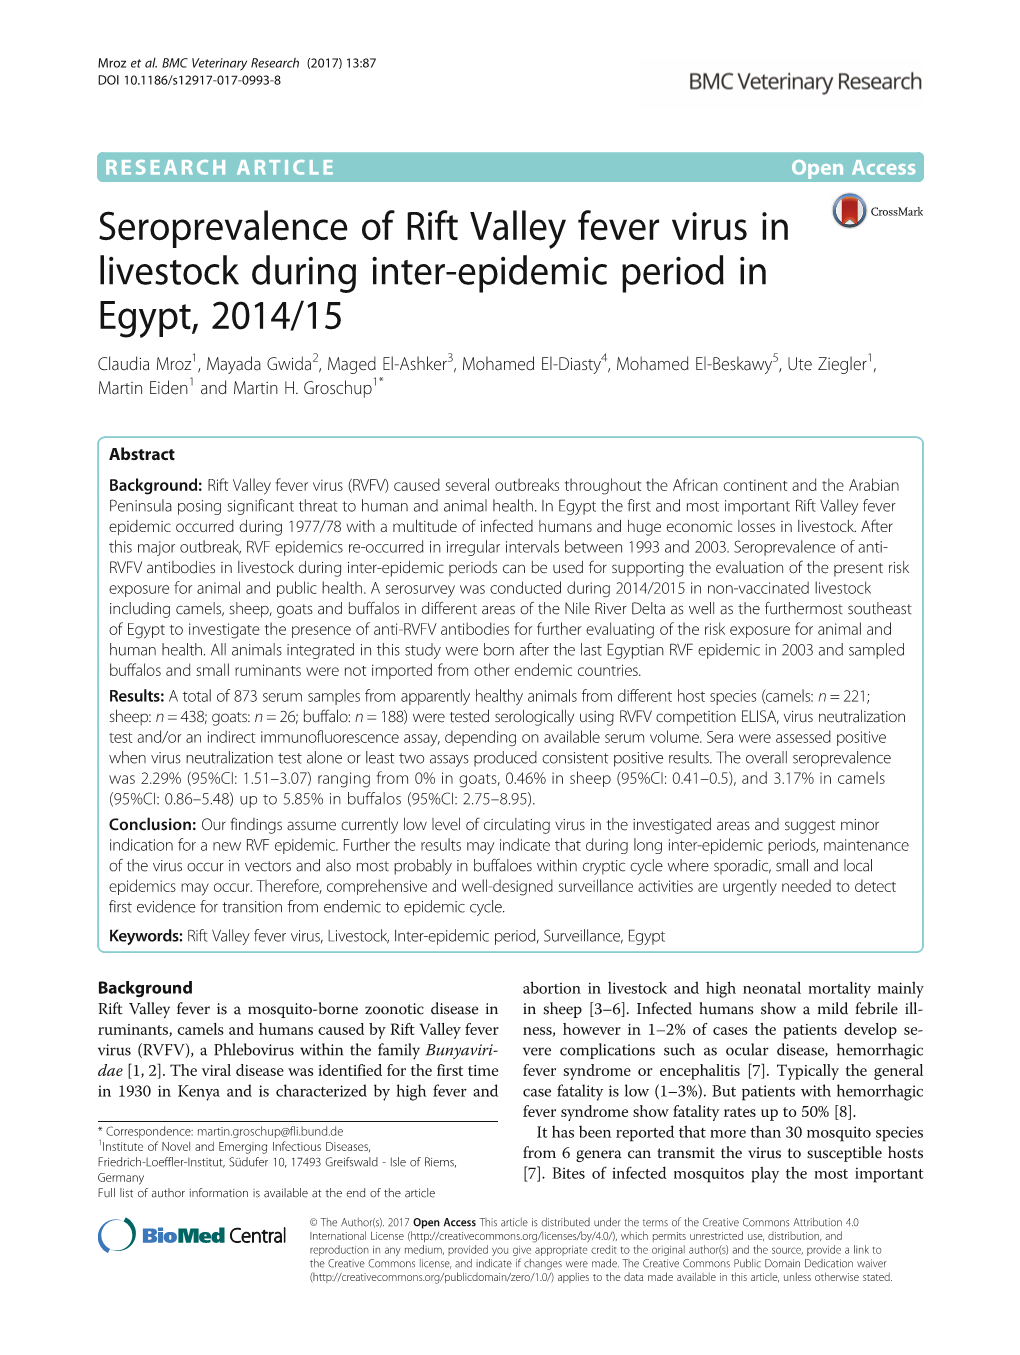 Seroprevalence of Rift Valley Fever Virus in Livestock During Inter-Epidemic Period in Egypt, 2014/15